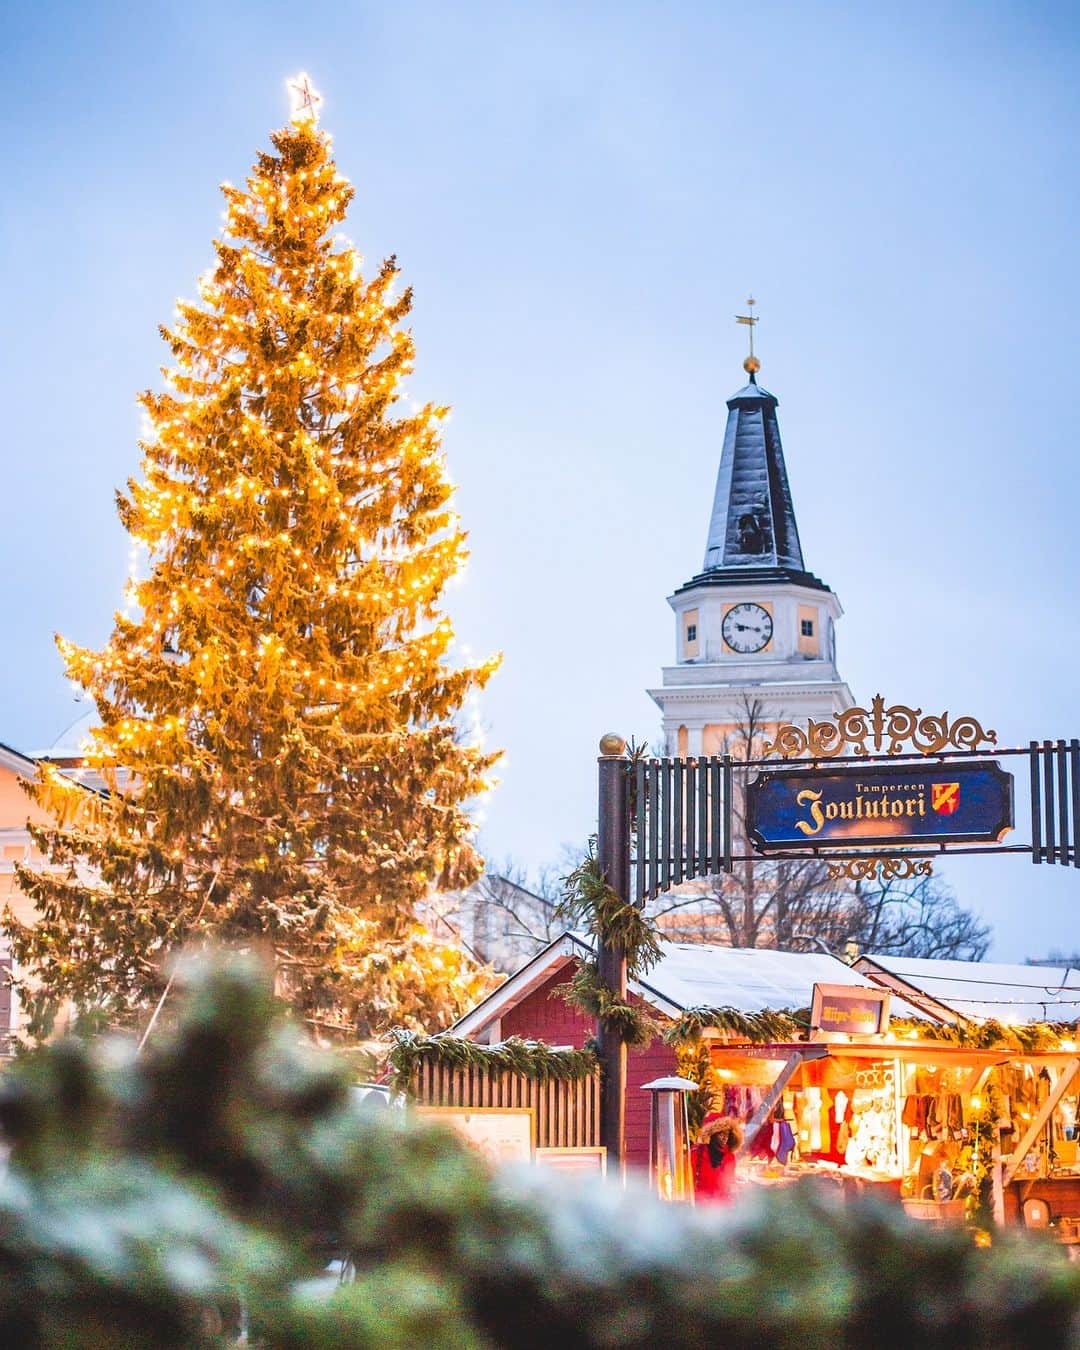 フィンランド政府観光局のインスタグラム：「【フィンランドのクリスマス情報🎄】 🎅今日はタンペレのクリスマスイベント情報をお届けします！  ✨タンペレのクリスマスマーケット 12月2～22日 タンペレの中央広場に、手工芸品やデザイン、ジュエリー、おいしいもの、おもちゃなどなど、様々なものを販売する小さな木造ブースが並びます。  🎄Tallipiha（タッリピハ）のクリスマス11月18日～12月23日 昔は厩舎だった美しい木造の建物の中にあるお店やカフェでクリスマスを楽しみましょう。敷地内にはクリスマスならではの小さなブースも並びます。  ✨Finlayson（フィンレイソン）エリアのクリスマス 11月25日～2024年1月6日 フィンレイソンエリアもクリスマスムードがあふれます。ポップアップショップ、クリスマスイルミネーション、クリスマスフェアでクリスマス気分が盛り上がります。  🎄Milavida（ミラヴィダ）パレスのクリスマス　11月18日～2024年1月7日 コンサートやガイド付きツアー、クリスマスデコレーションのワークショップなど体験できることが盛りだくさん。  ✨タンペレの一番美しいクリスマスウィンドウ 11月26日～12月24日 タンペレの街の中心で一番美しいクリスマスウィンドウの投票しましょう！街を歩いてお気に入りの窓を見つけて投票すると、ギフトカードの賞品がもらえるチャンスも！詳しくはウェブサイトのマップで。  🎄Doghill（ドッグヒル）クリスマス 11月26日～12月18日の間の土日、12月26～27日 サンタさん、サンタさんのお手伝いをするエルフたち、トナカイ、かわいい農場の動物に会いに行きましょう。Doghillのお店でクリスマスキャンディやギフトのショッピングも。  ✨Hämeenpuisto（ハメーンプイスト）のクリスマスマーケット 11月24～26日 タンペレの様々な地域からやってくる職人の手仕事や地産の食品を始めとするおいしいものが並びます。  🎄Designtoriクリスマスマーケット　12月3日 服やジュエリー、家庭用品、インテリア製品など、フィンランドデザインブランドが出店します。  📸 Laura Vanzo / @visittampereofficial   #visittampere #Tampere #タンペレ #クリスマス #クリスマスマーケット #VisitFinland #visitfinlandjp #フィンランド政府観光局 #フィンランド」